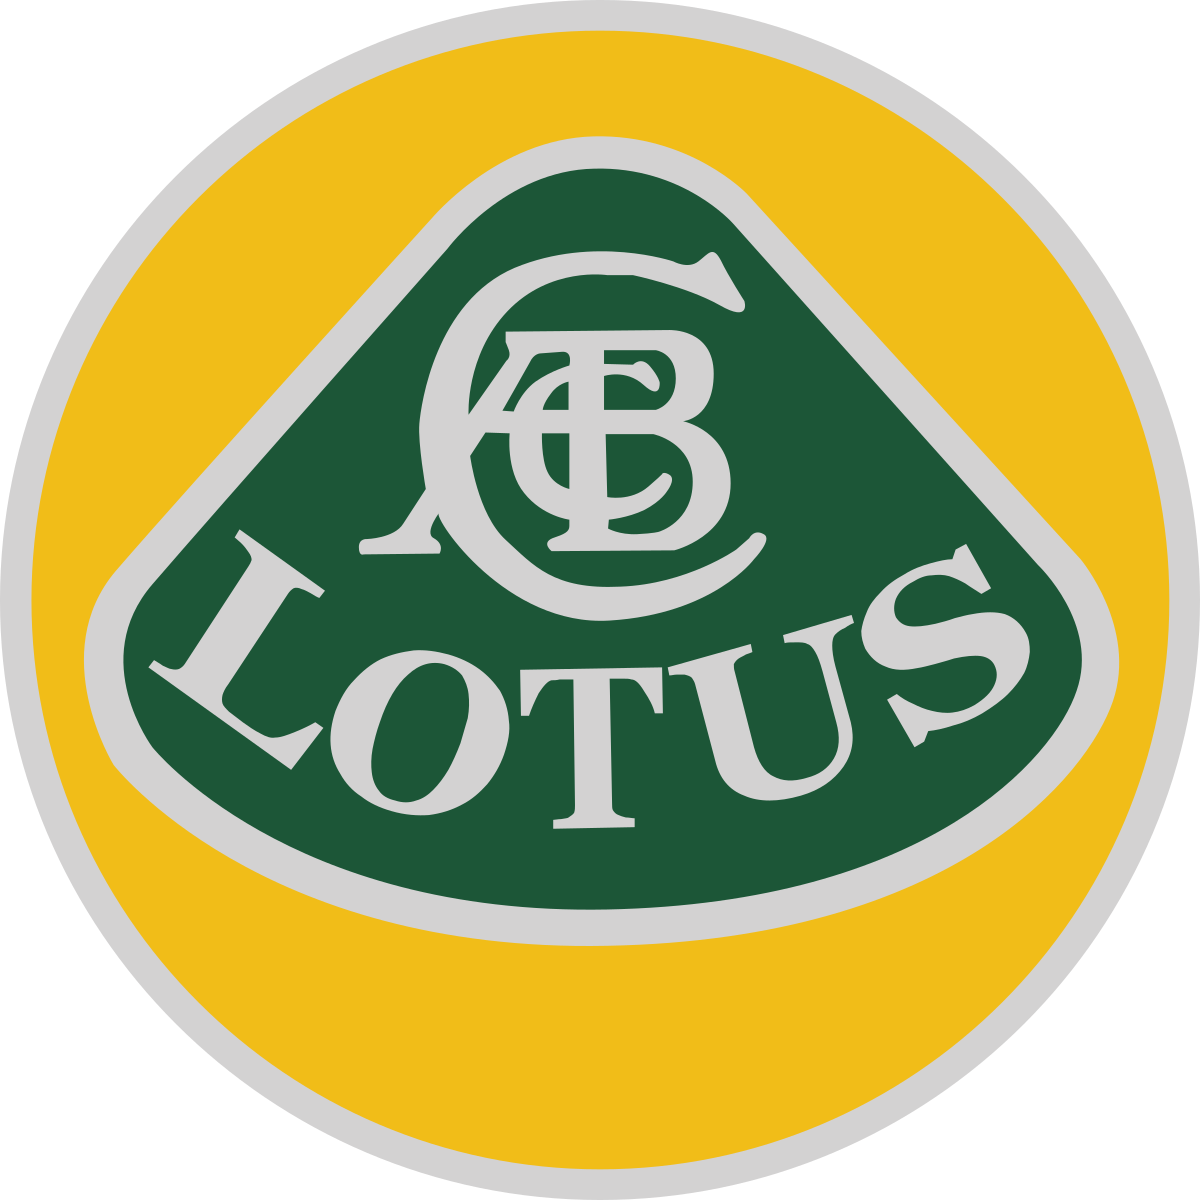 Lotus araba logosu